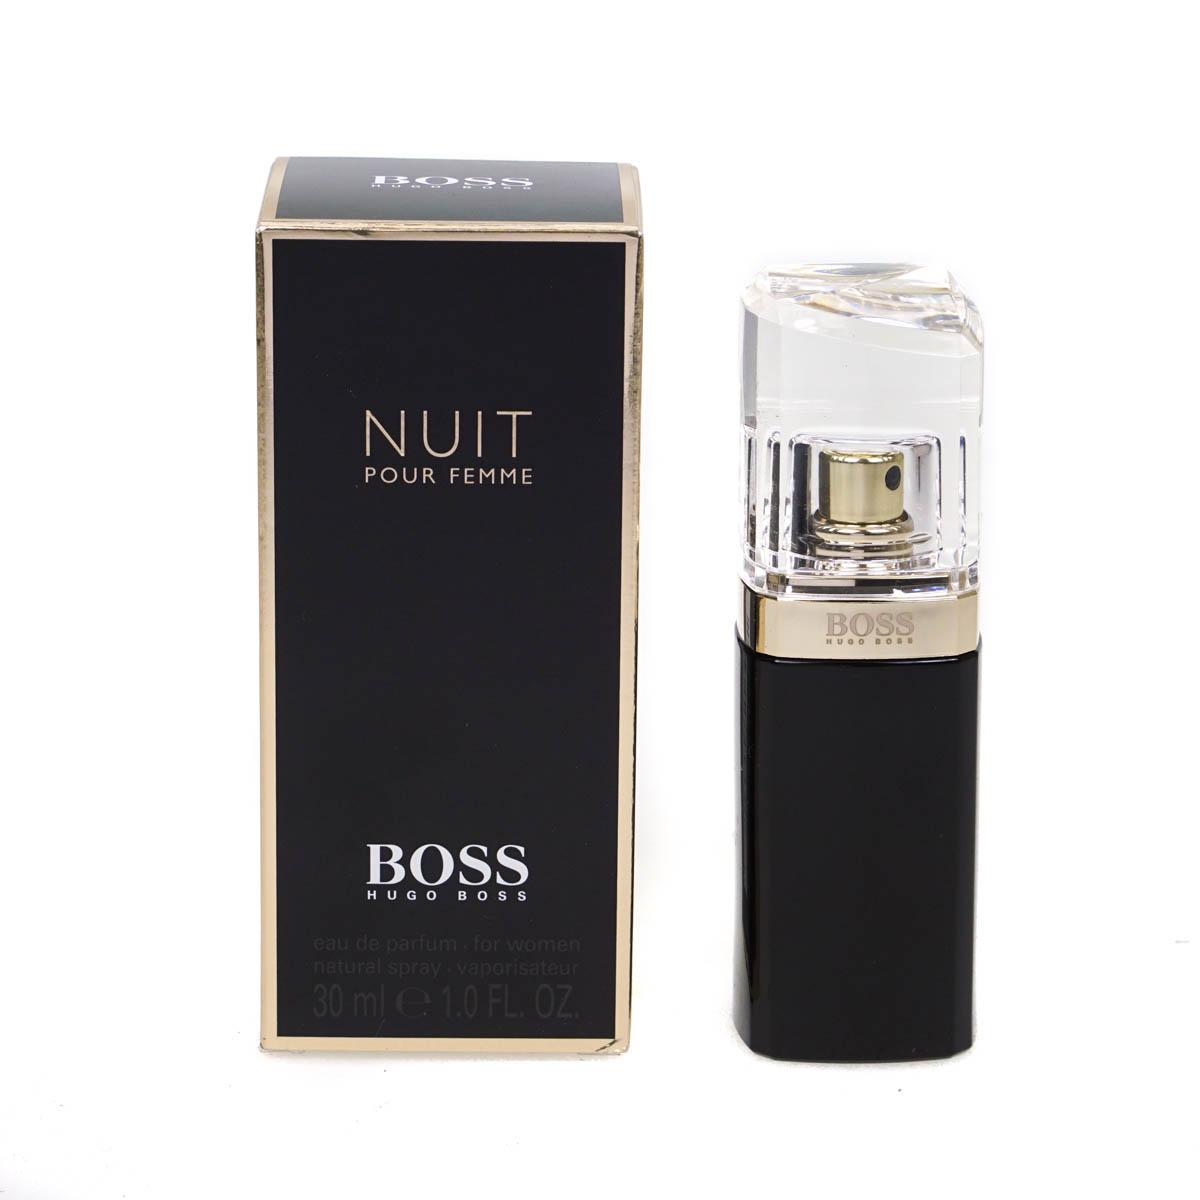 Hugo Boss Nuit Pour Femme 30ml Eau De Parfum Spray | eBay